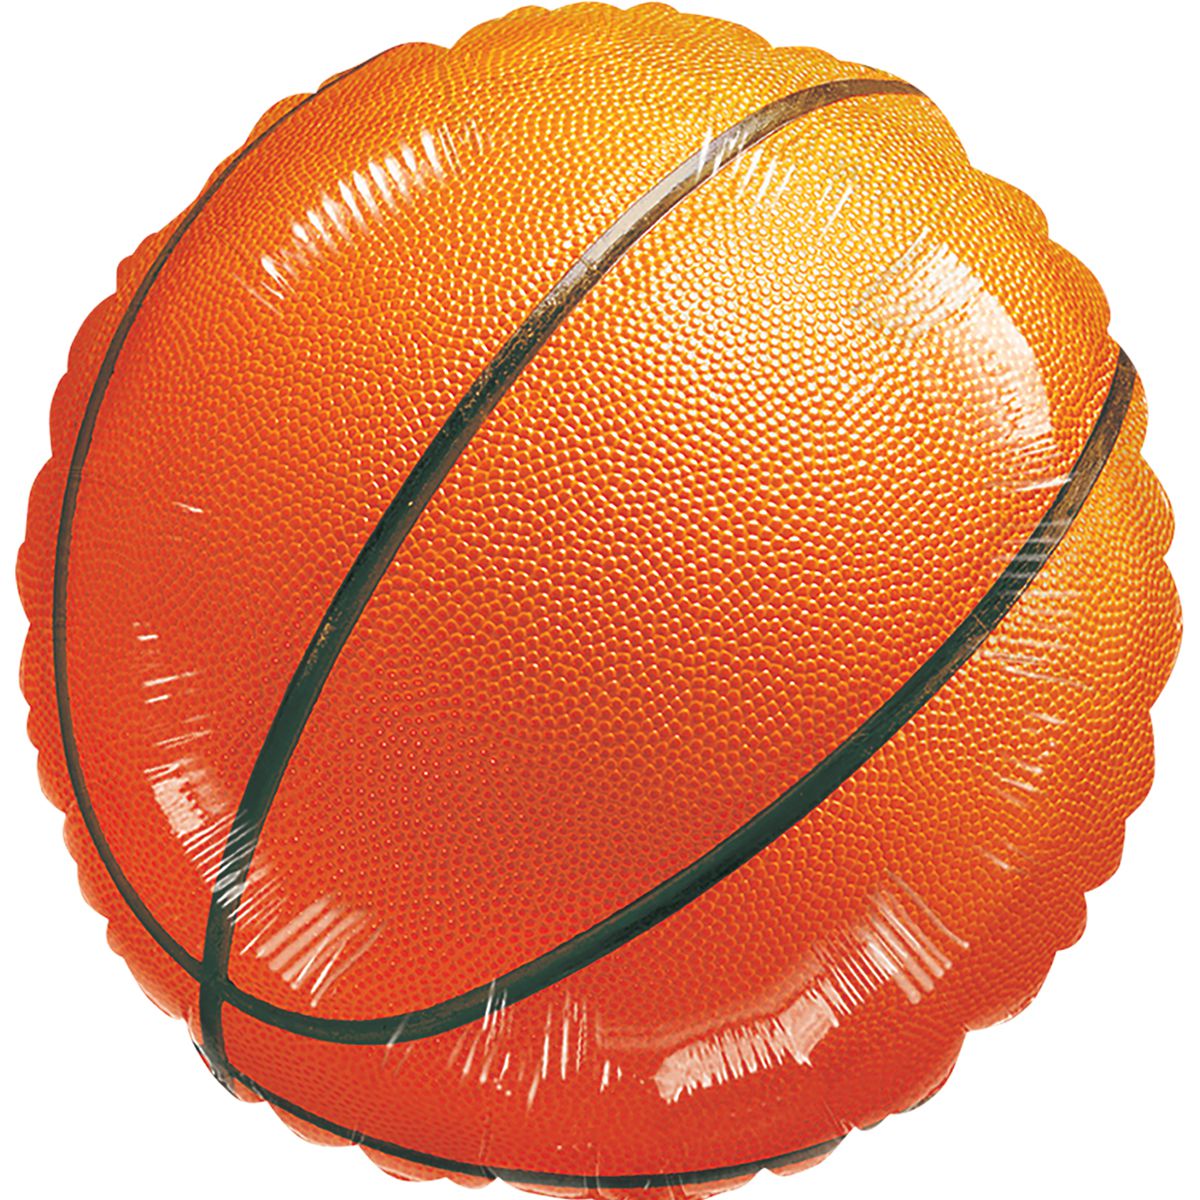 18" баскетбольный мяч